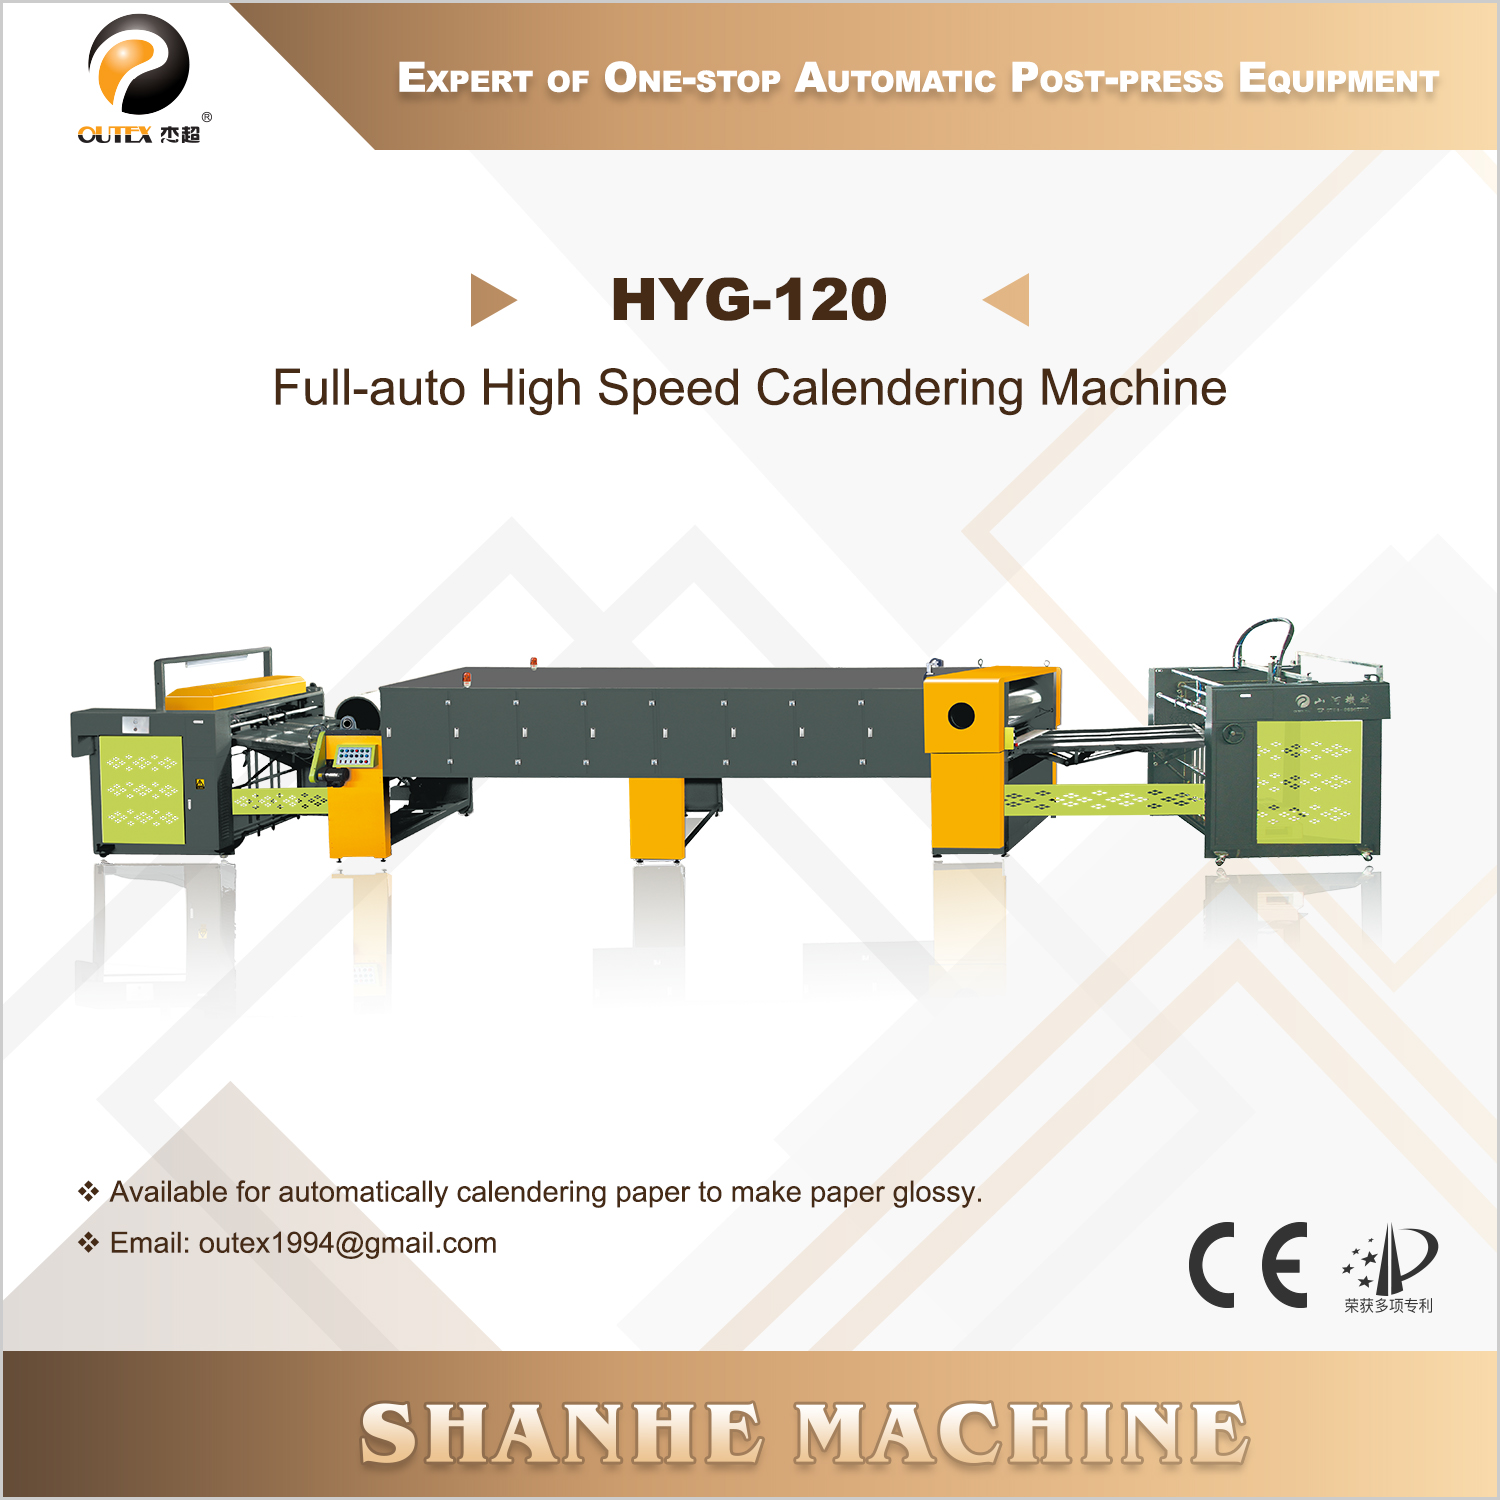 HYG-120 Full-auto High Speed Calendering Machine